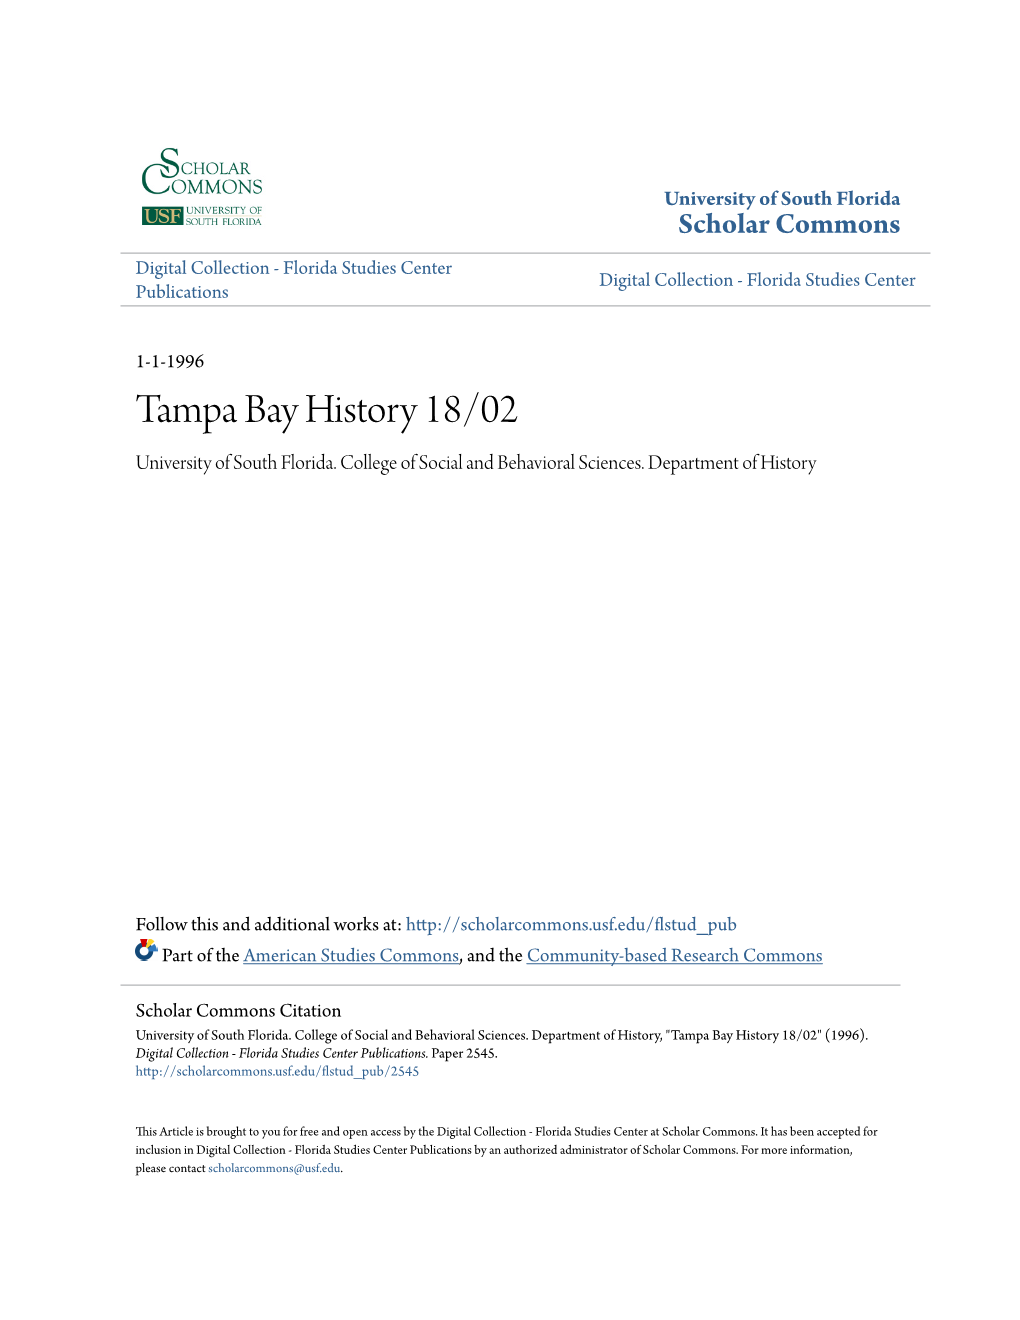 Tampa Bay History 18/02 University of South Florida